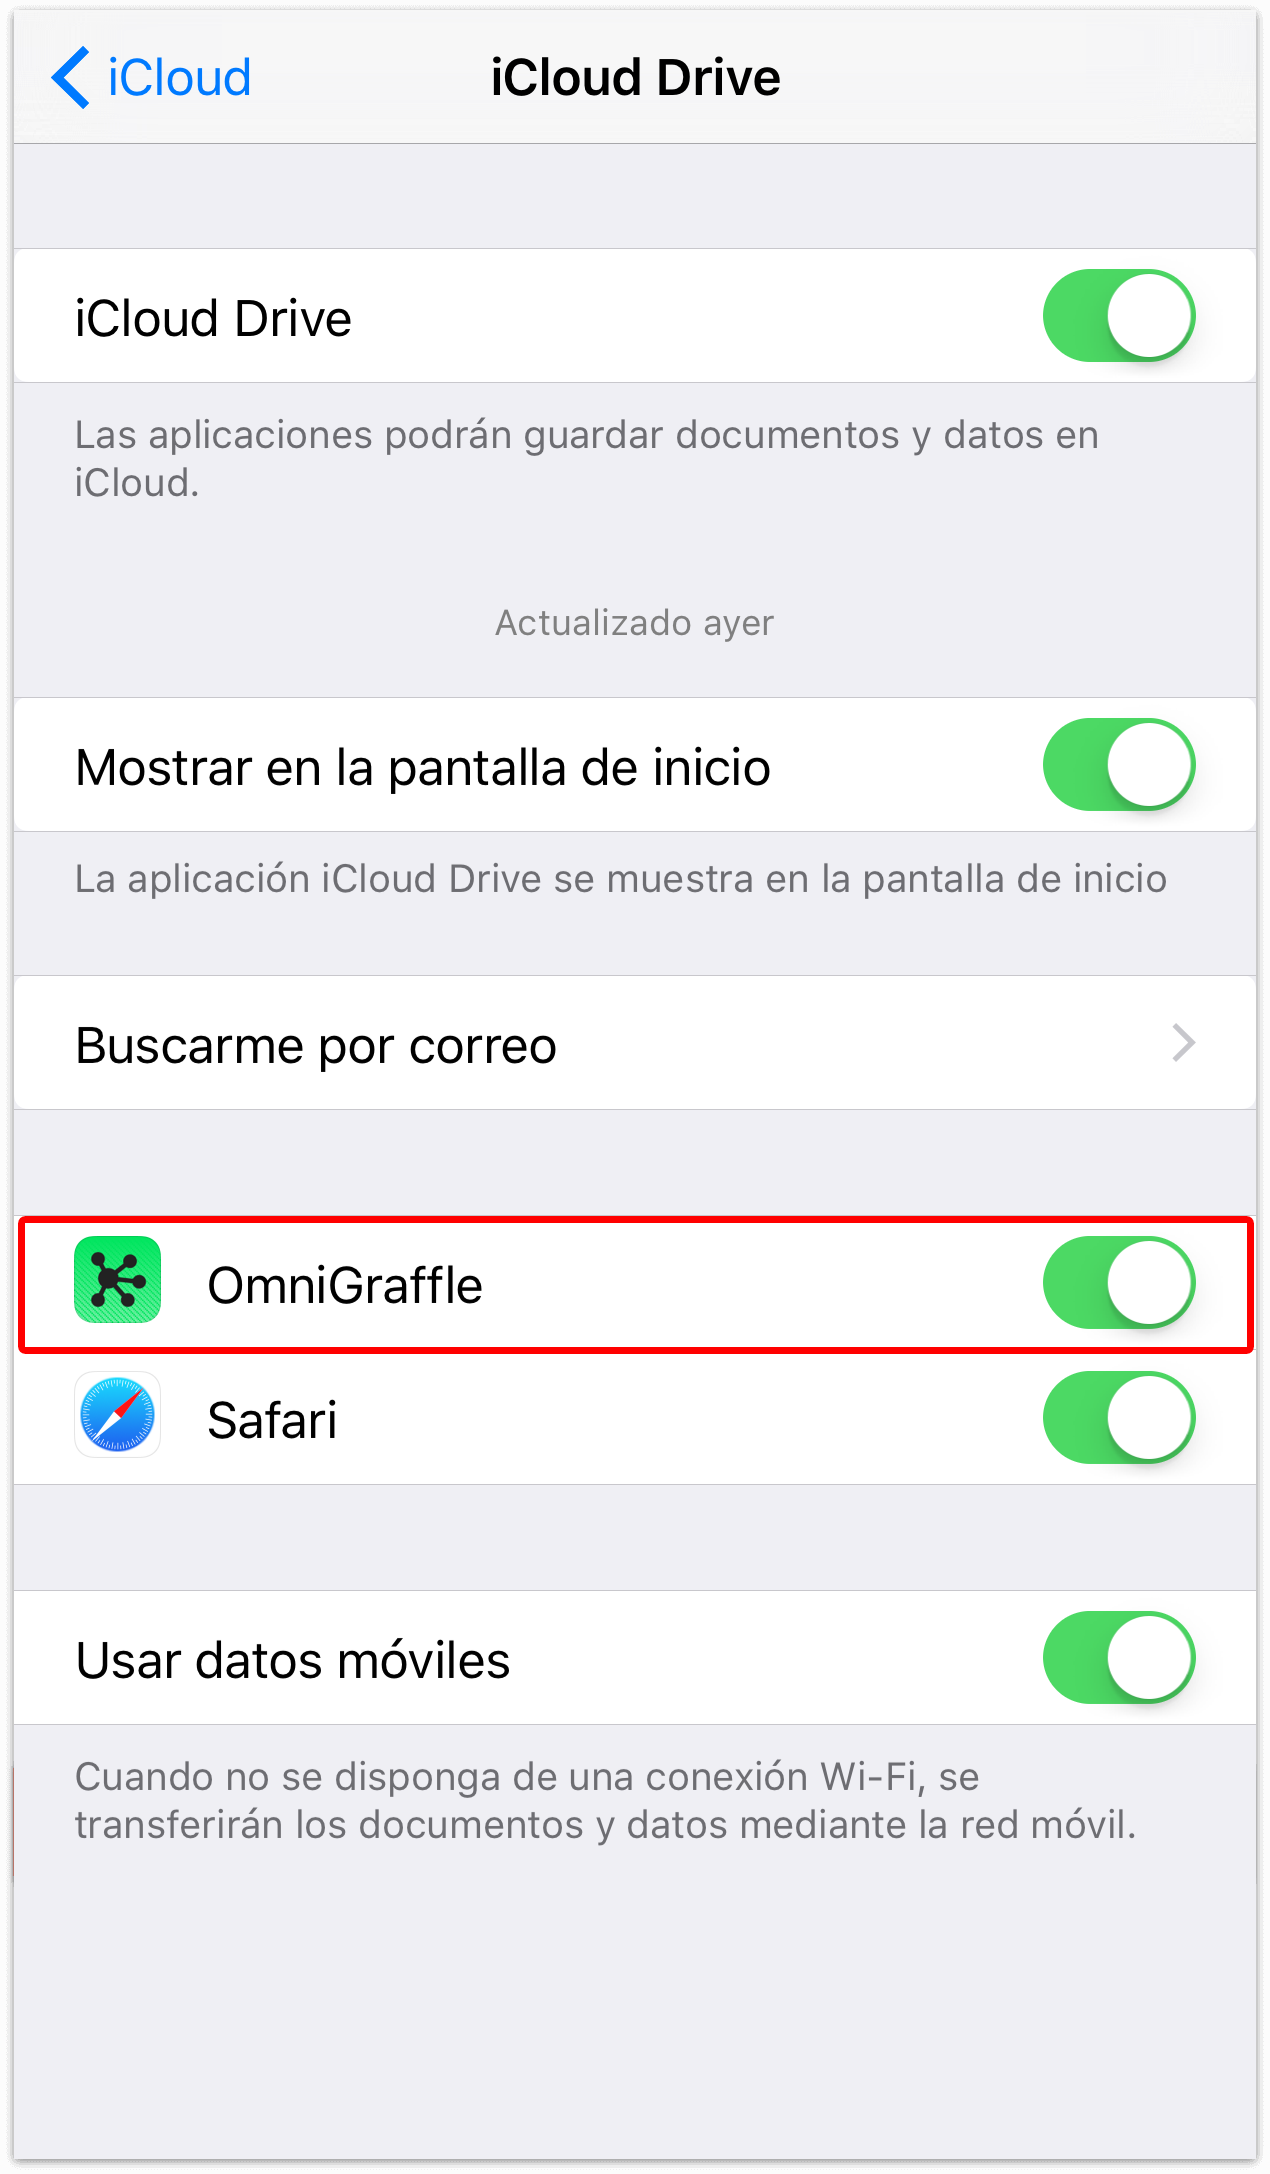 La pantalla de iCloud Drive, mostrando la lista de aplicaciones que guardan documentos y datos en la nube